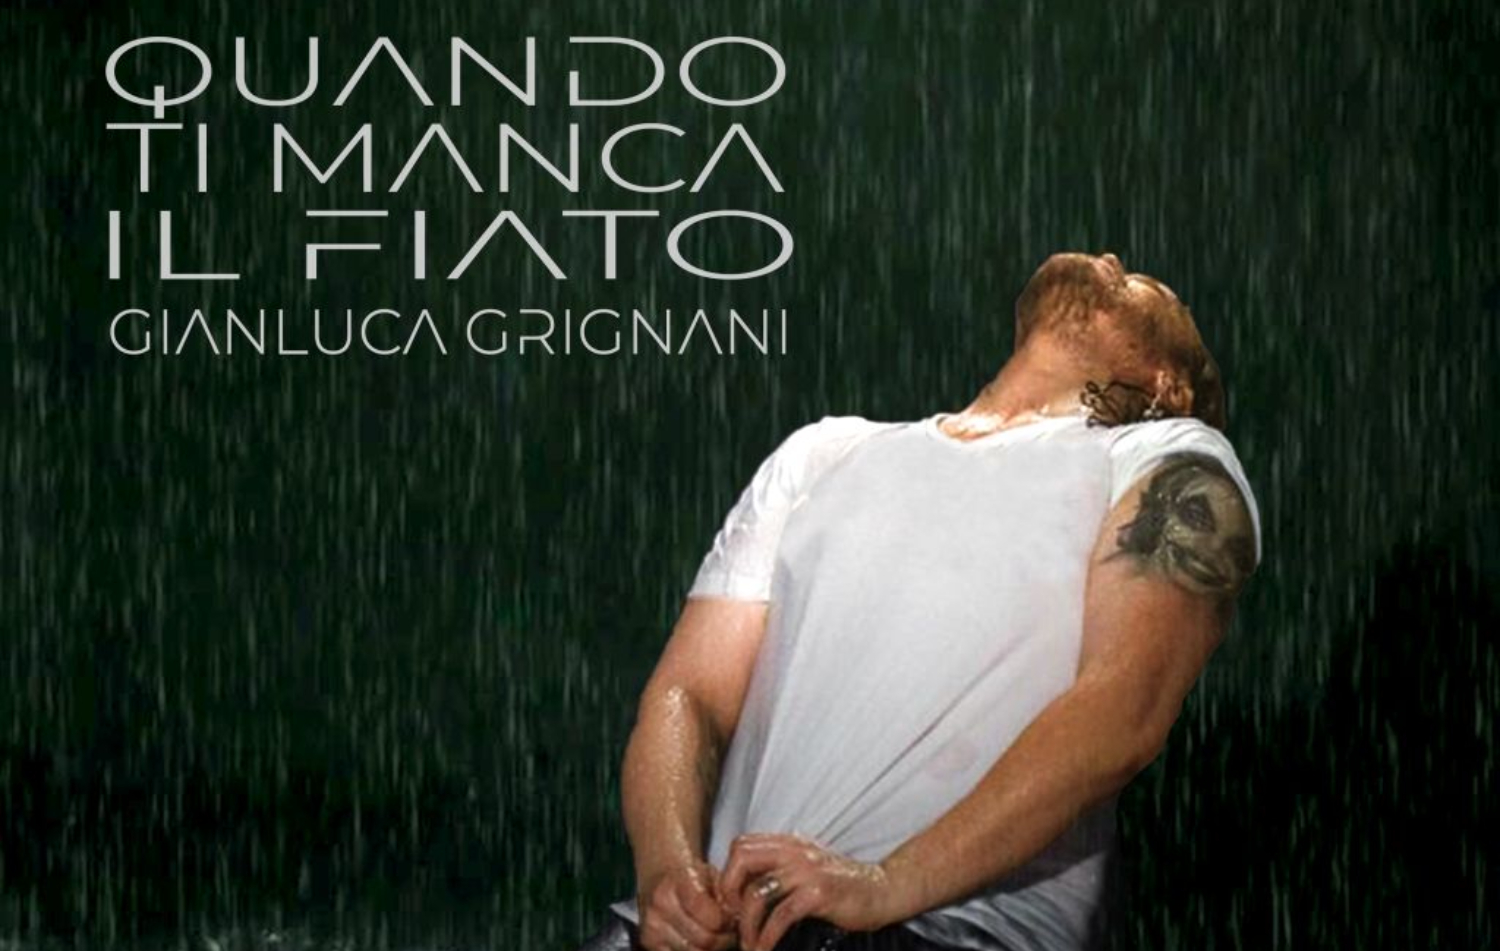 Gianluca Grignani, Quando ti manca il fiato, al Festival di Sanremo 2023 si aggiudica il secondo posto al Premio della Critica Mia Martini